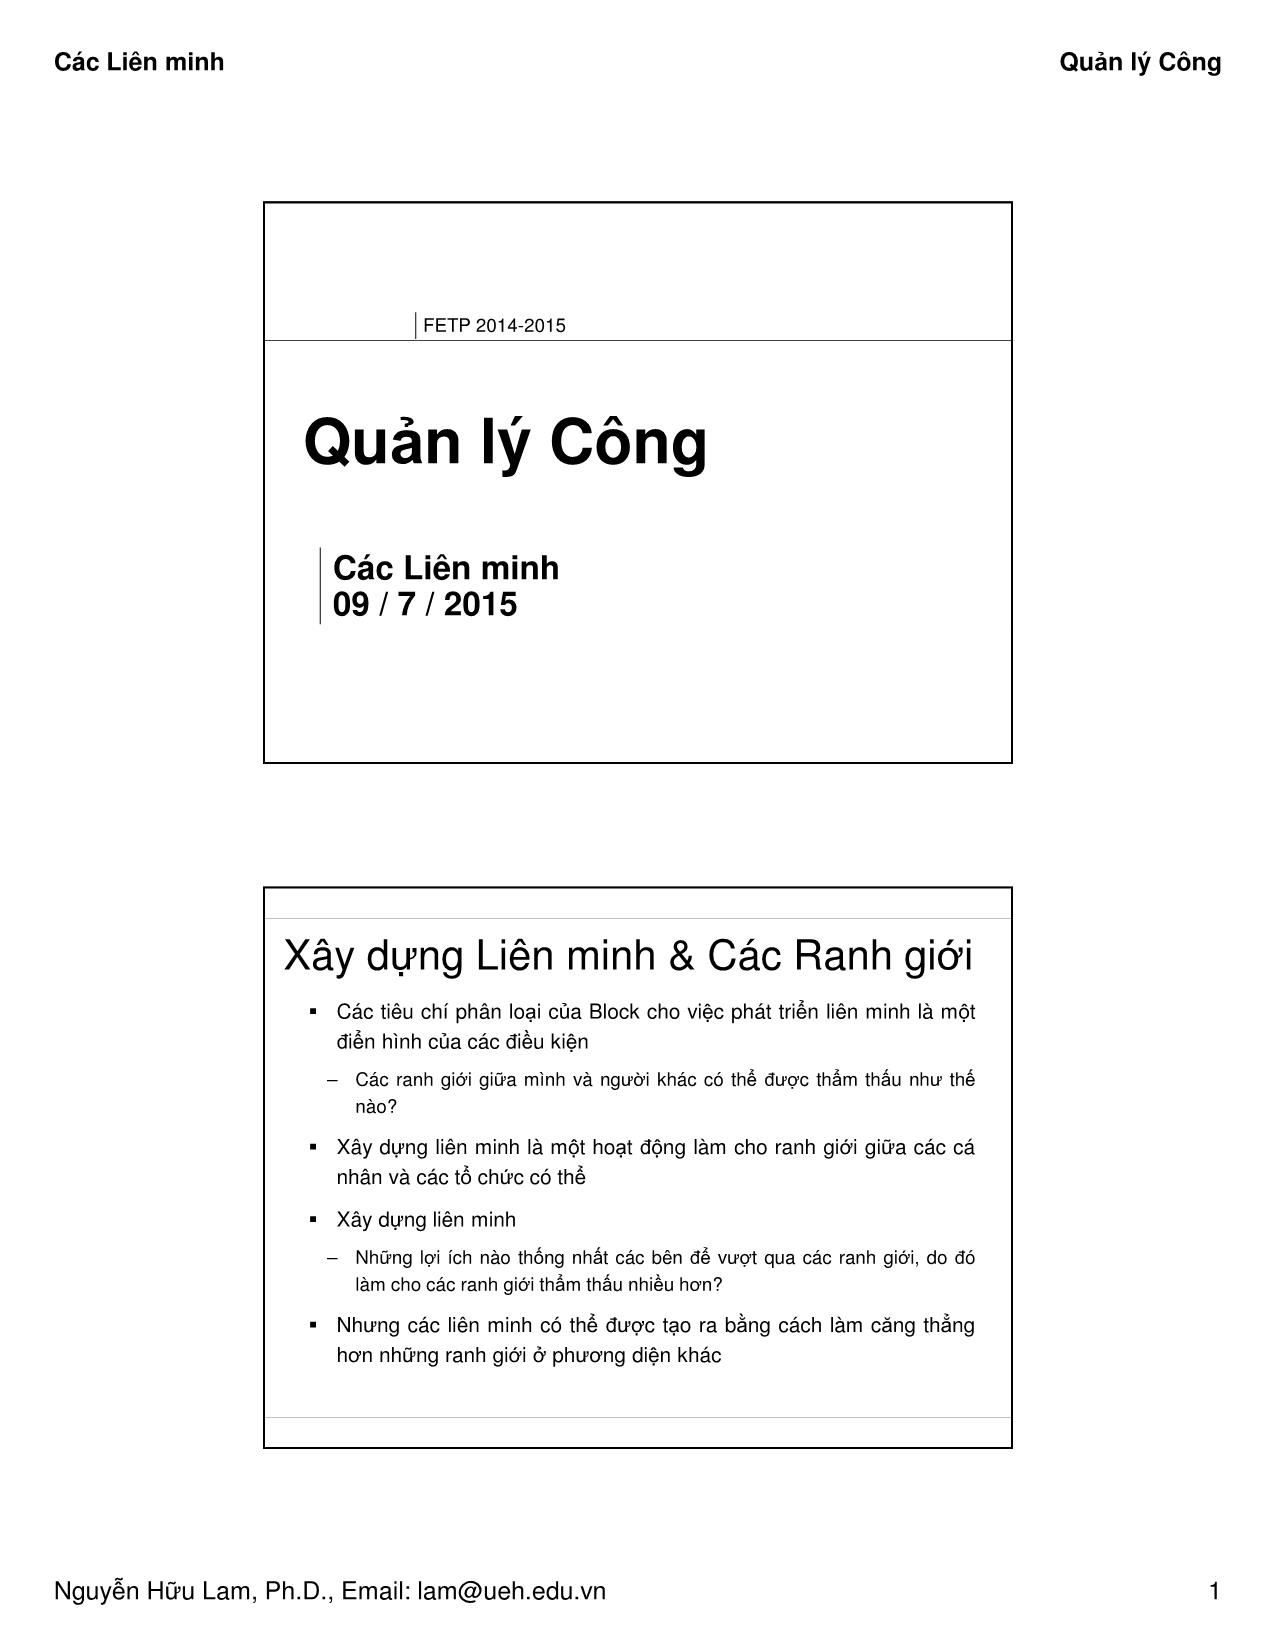 Bài giảng Quản lý công - Các Liên minh - Nguyễn Hữu Lam trang 1